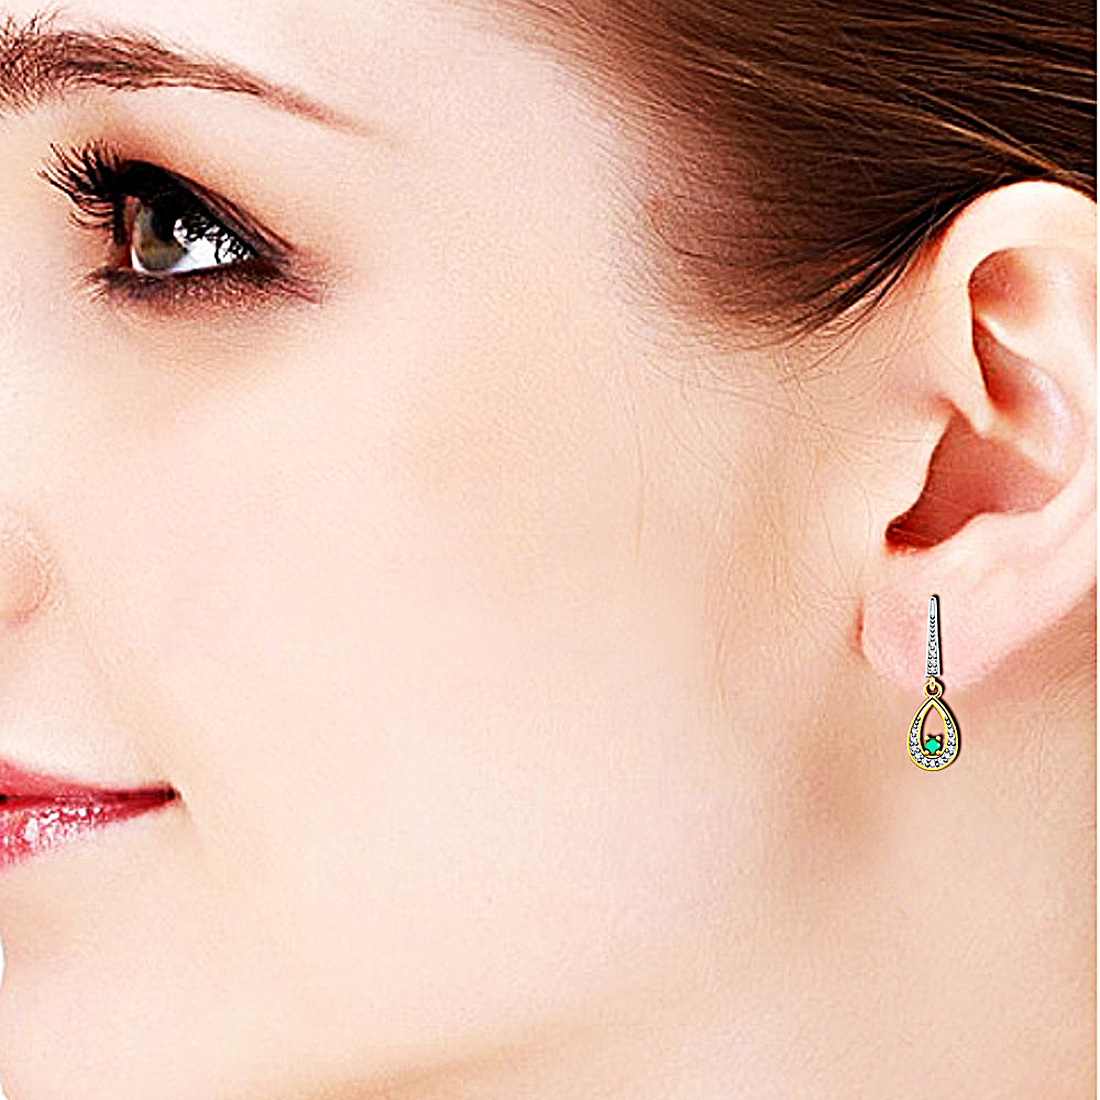 Emeralds in Diamond Earring